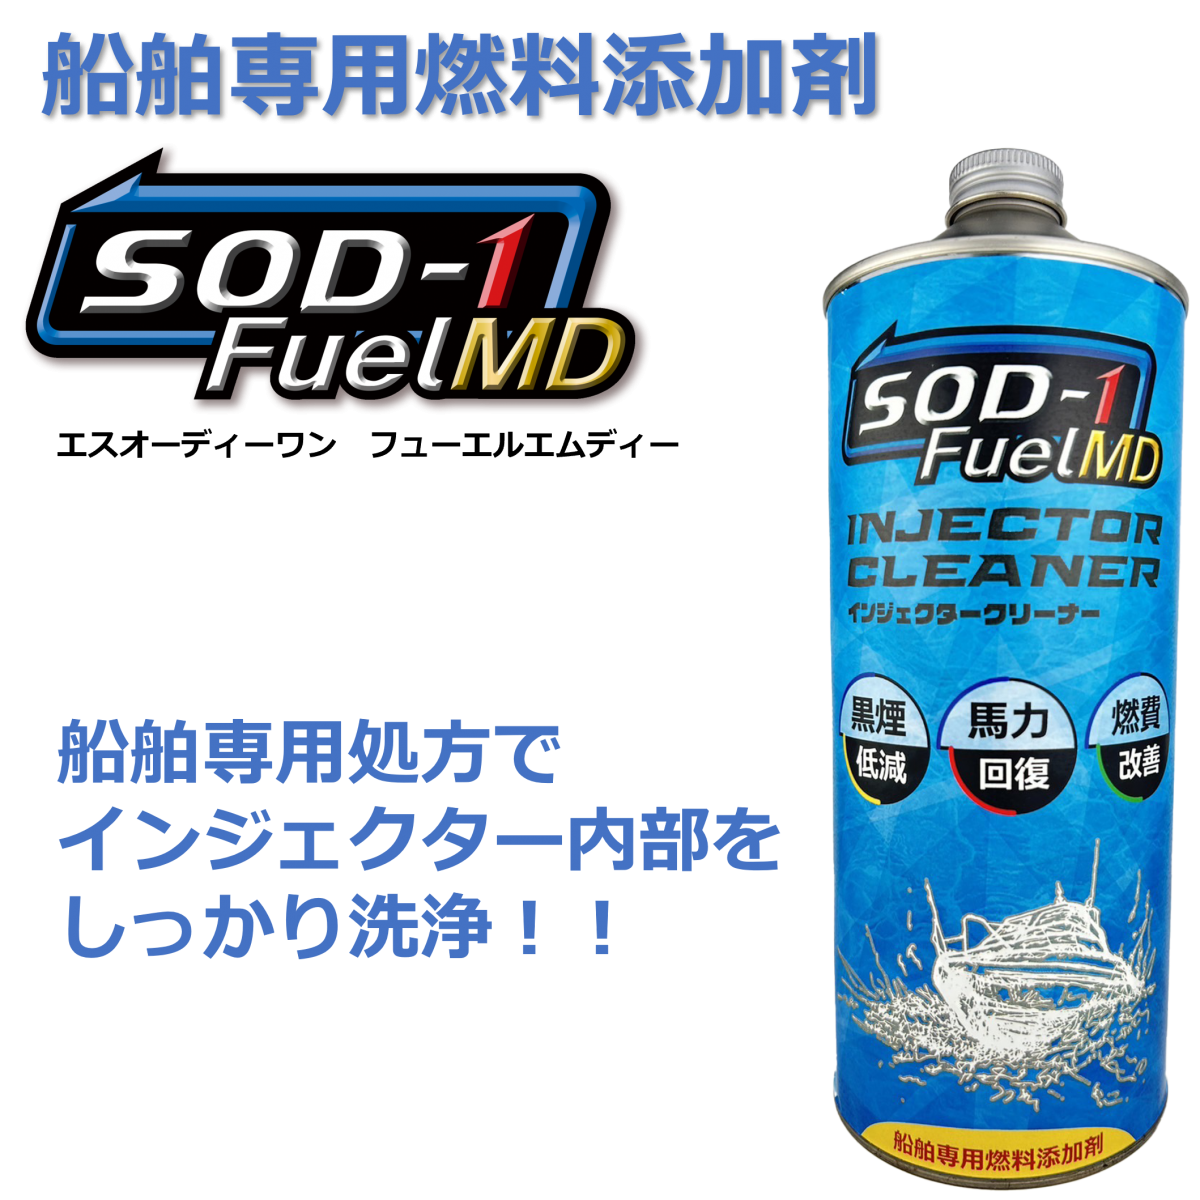 船舶専用燃料添加剤 SOD-1 FuelMDのご紹介 | エンジンオイルの添加剤は 